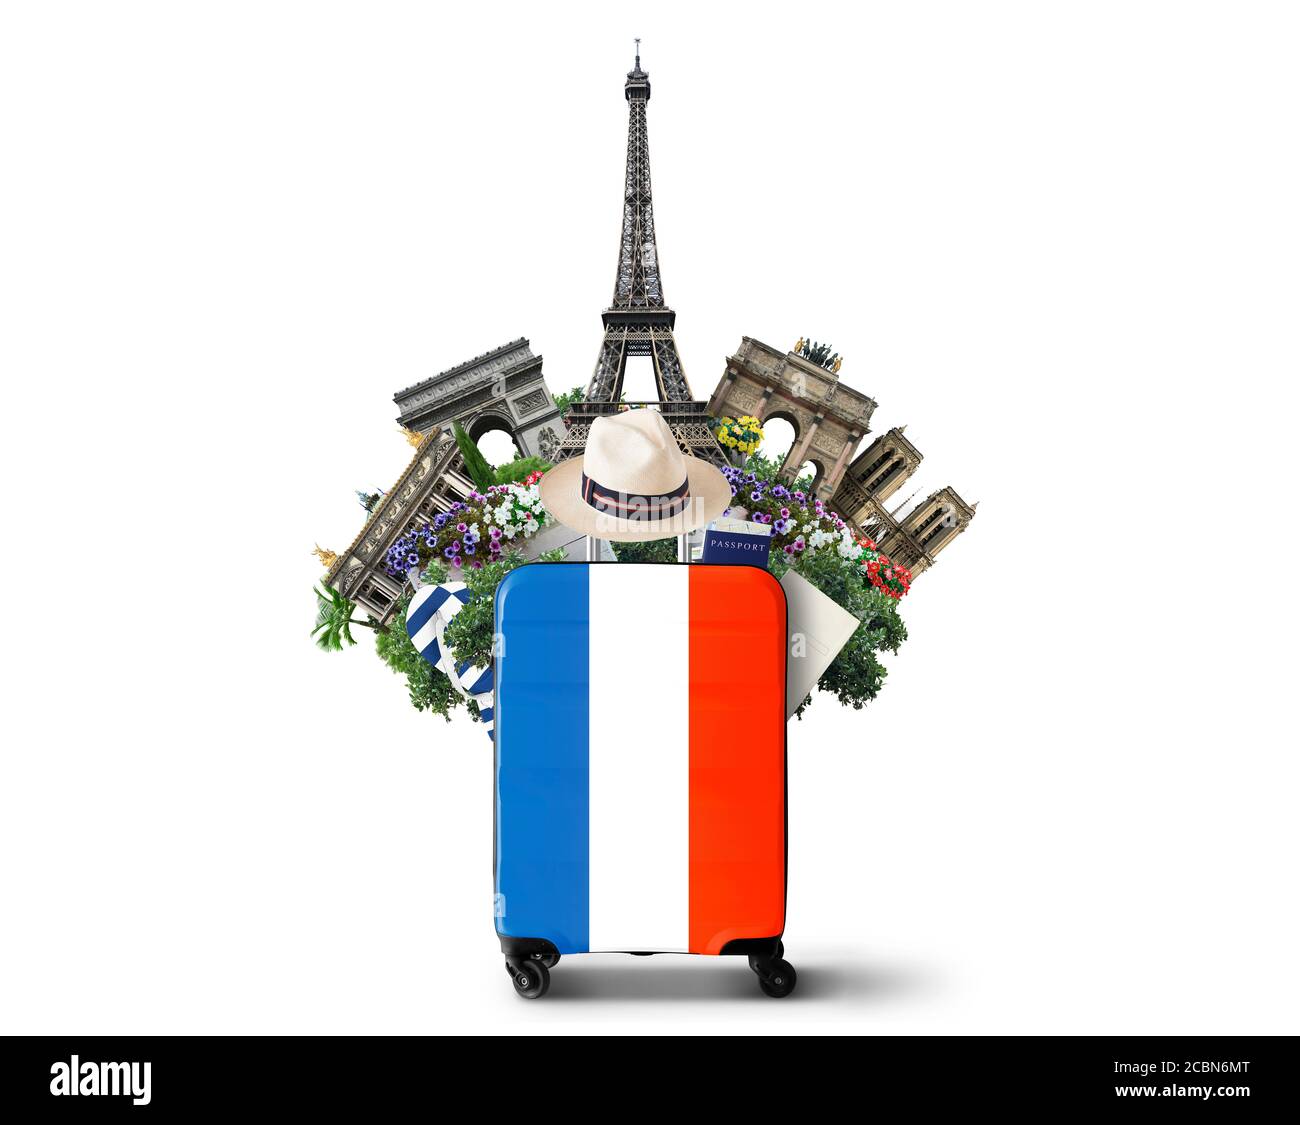 France, valise moderne avec drapeau français et monuments Banque D'Images